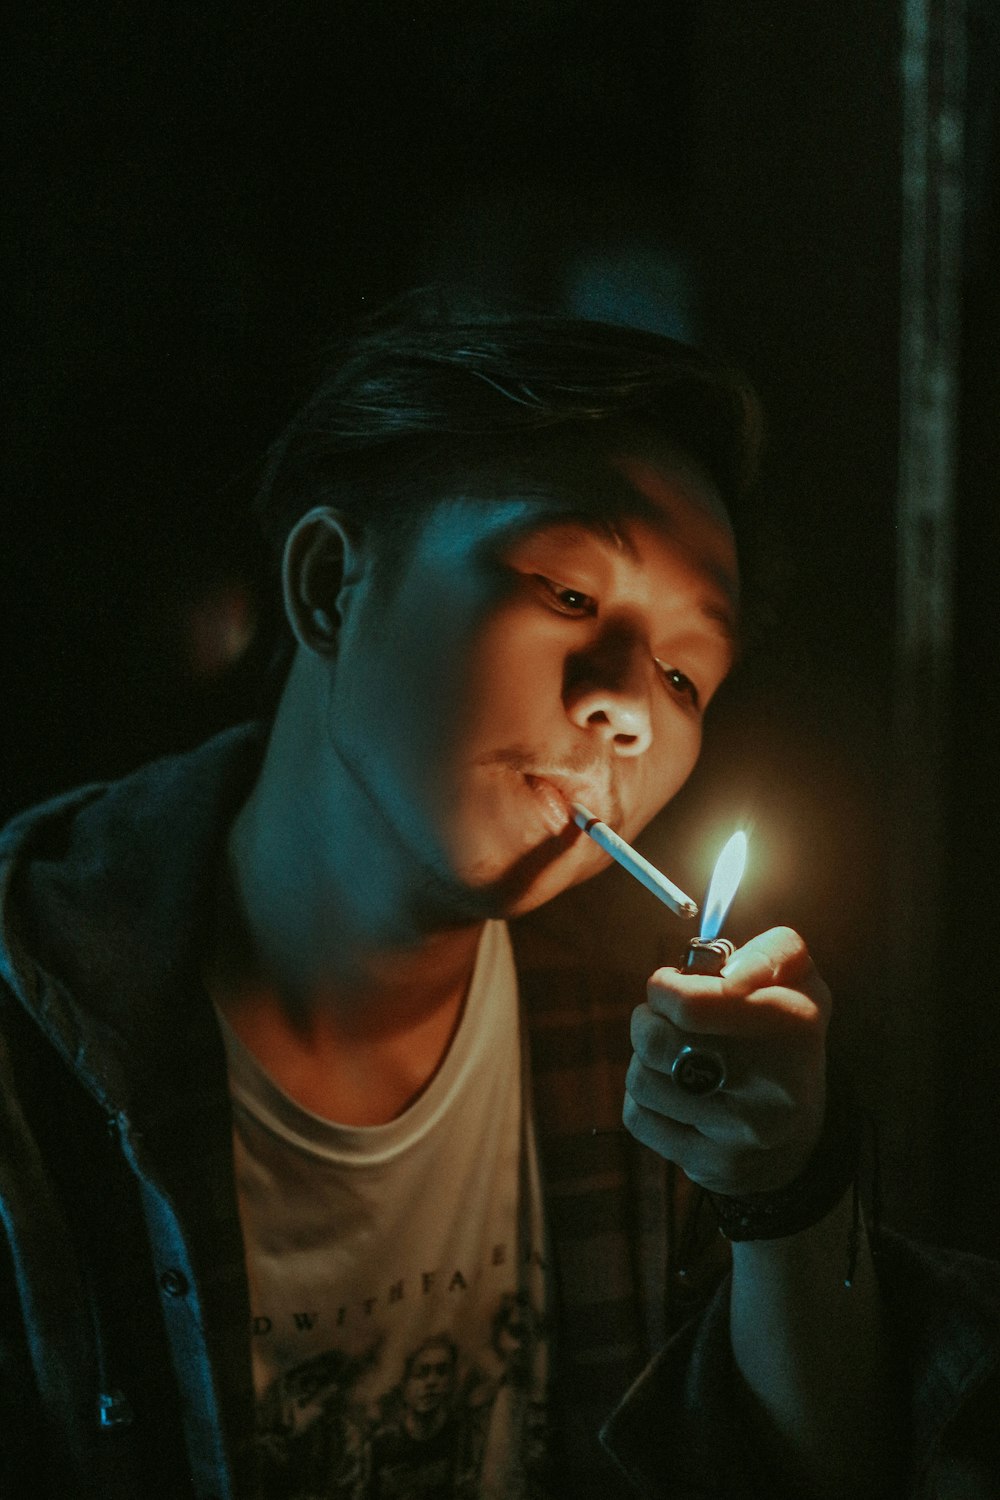 Mann zündet sich eine Zigarette im Mund an